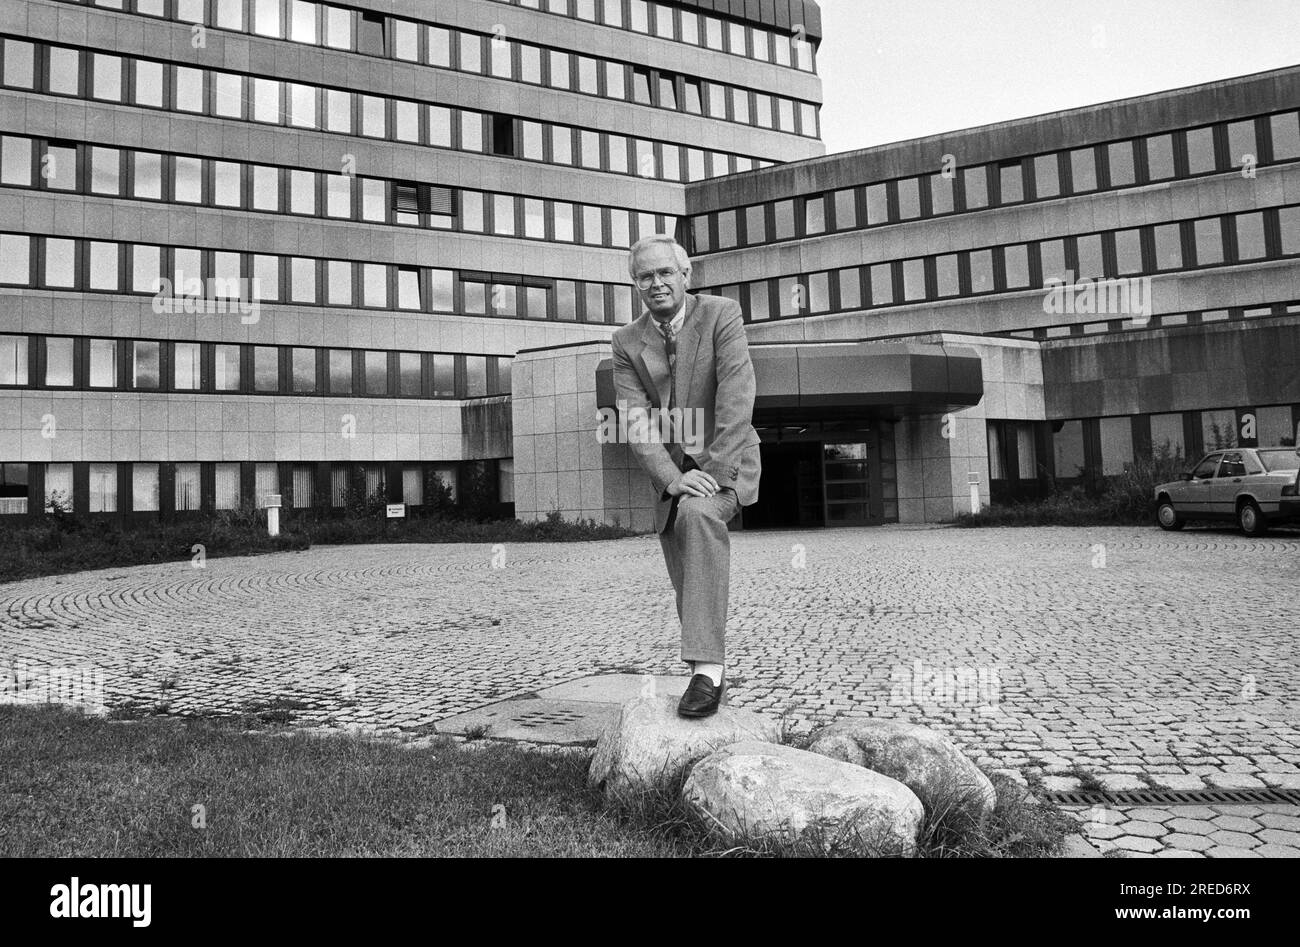 Allemagne, Koeln, 31.08.1992 Archive : 36-18-12 Président Office fédéral pour la protection de la Constitution photo : Dr. Eckhard Werthebach [traduction automatique] Banque D'Images